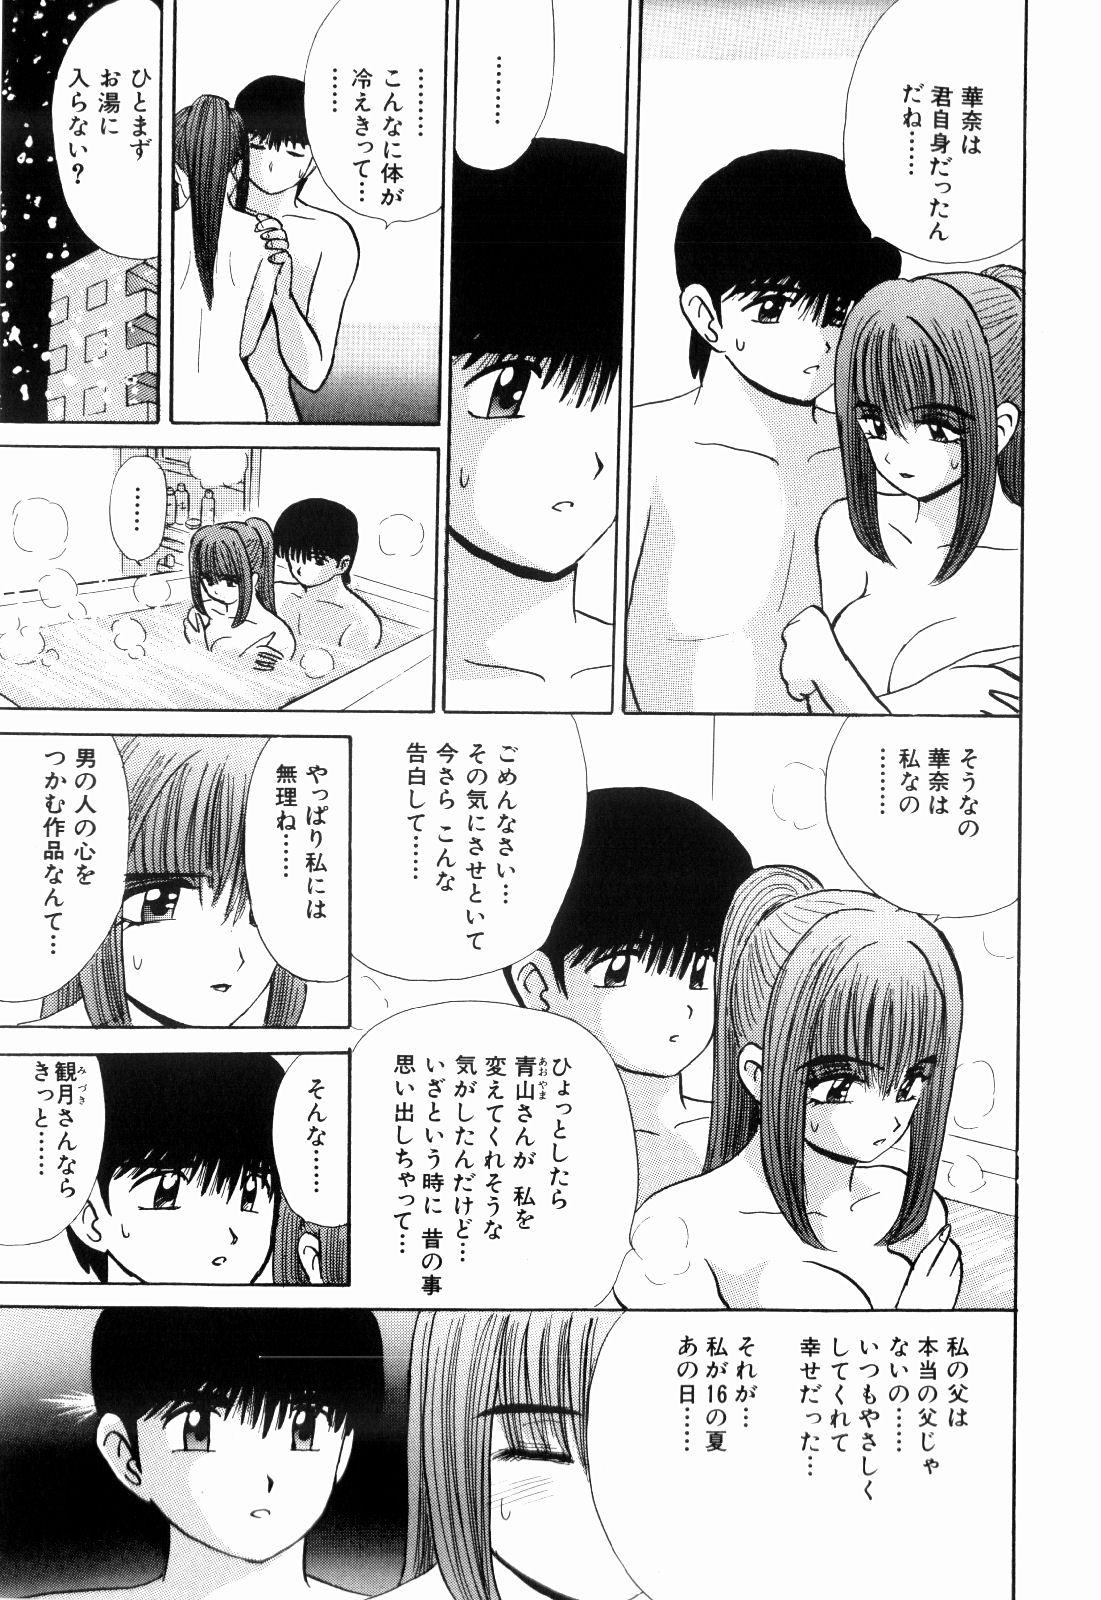 Gays Kenjiro Kakimoto - Futari Kurashi 13 Consolo - Page 11